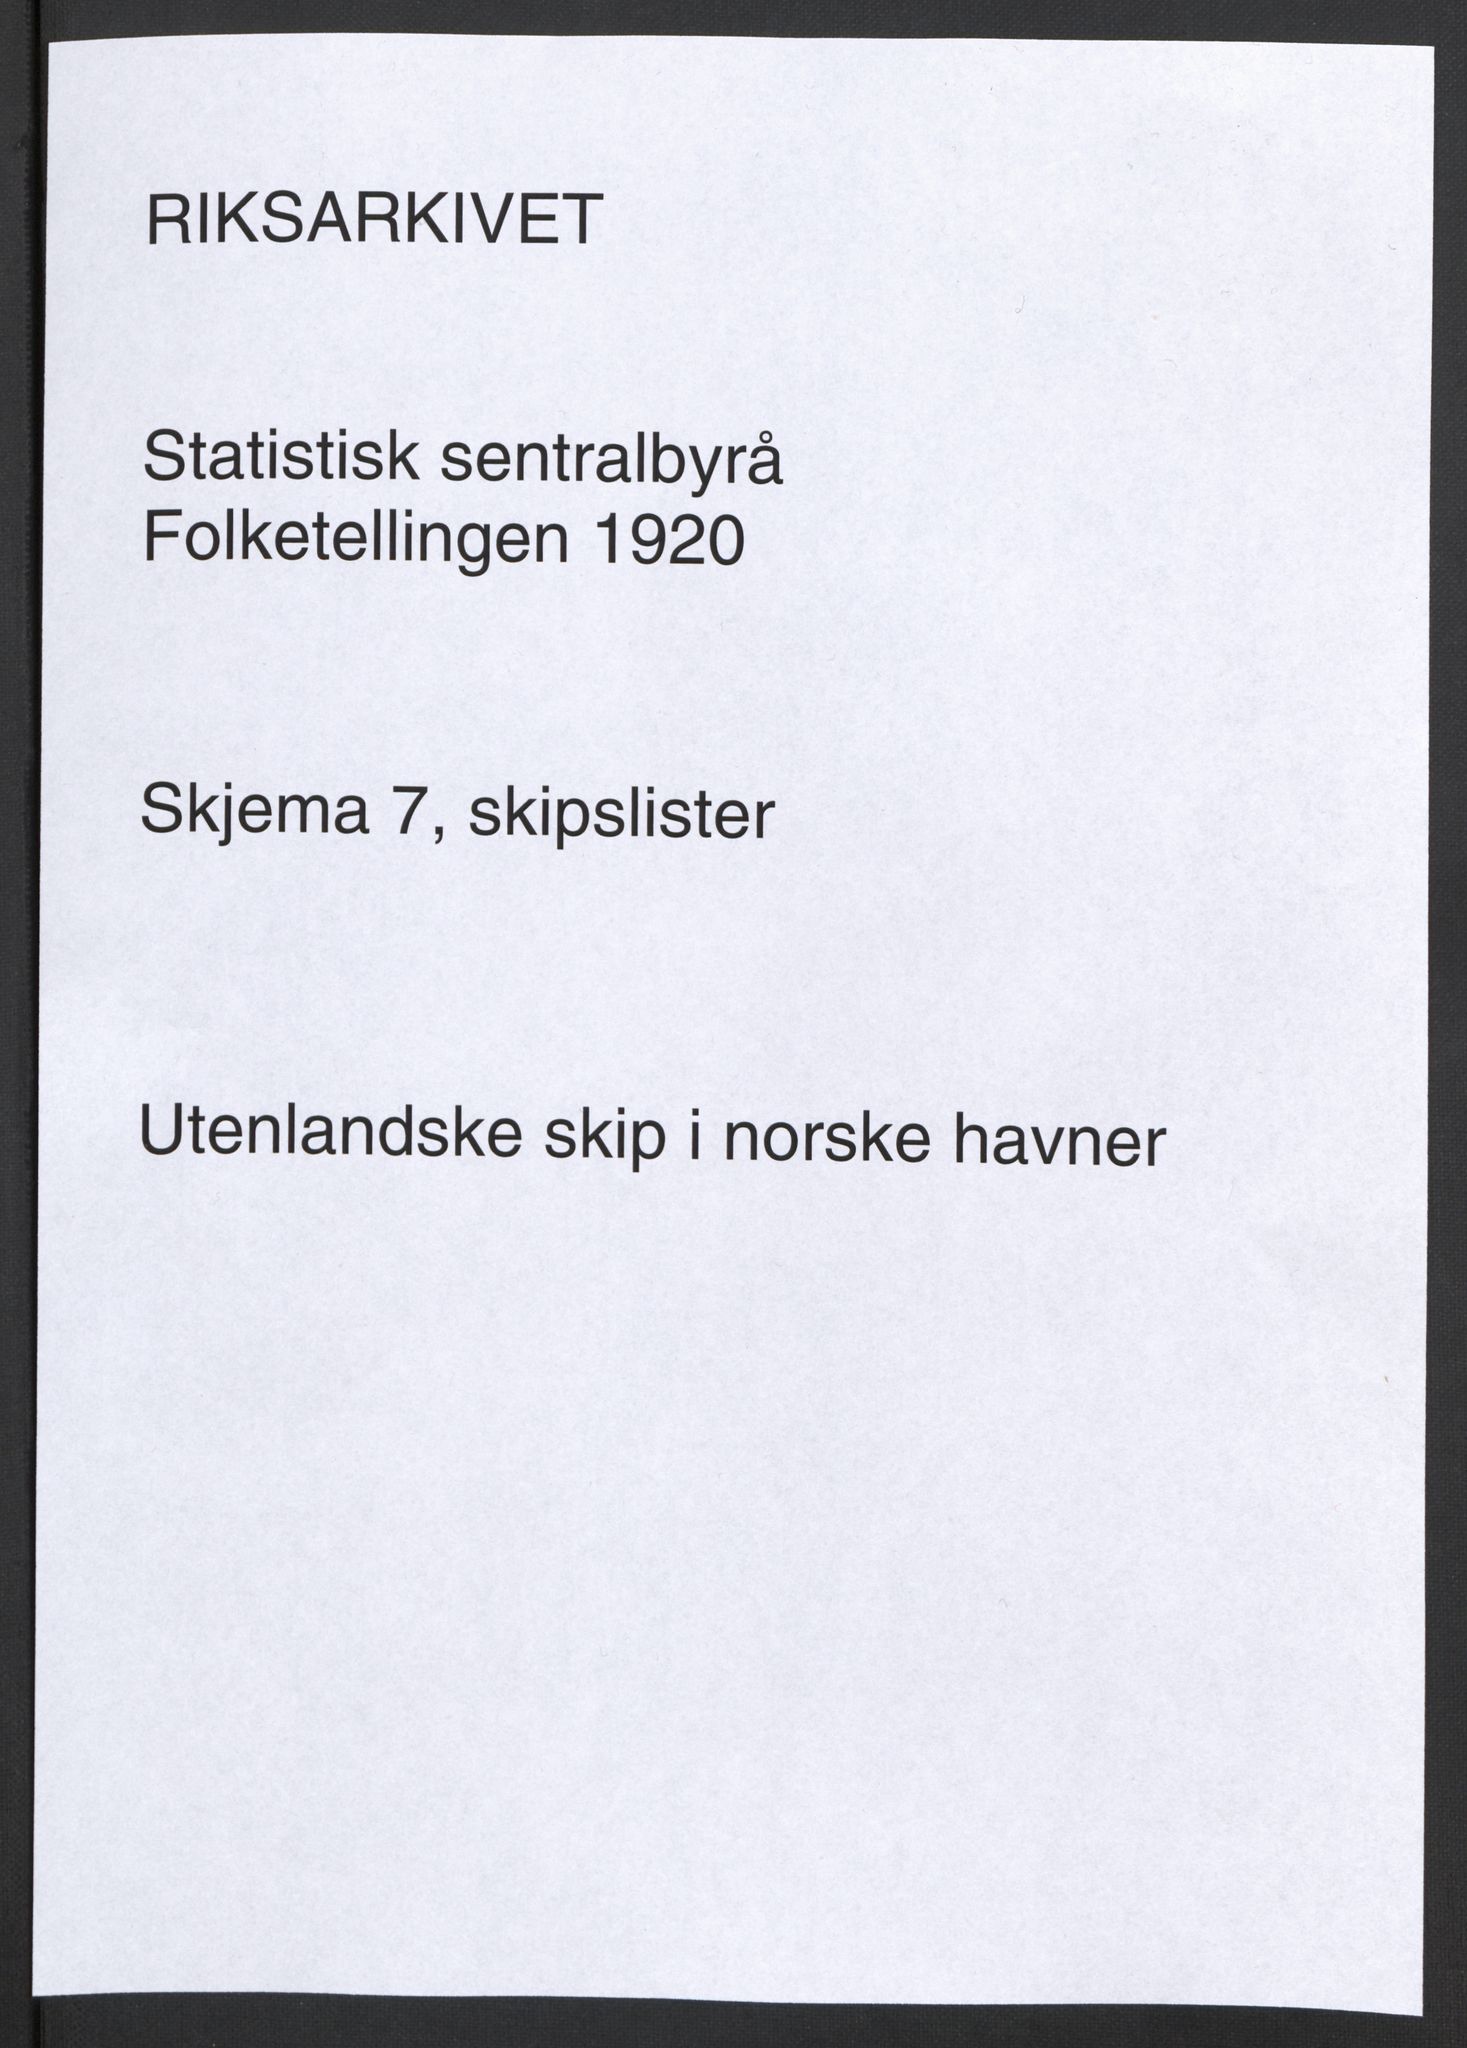 RA, Folketellinga 1920: Skipslister for utenlandske skip i norske havner, 1920, s. 1